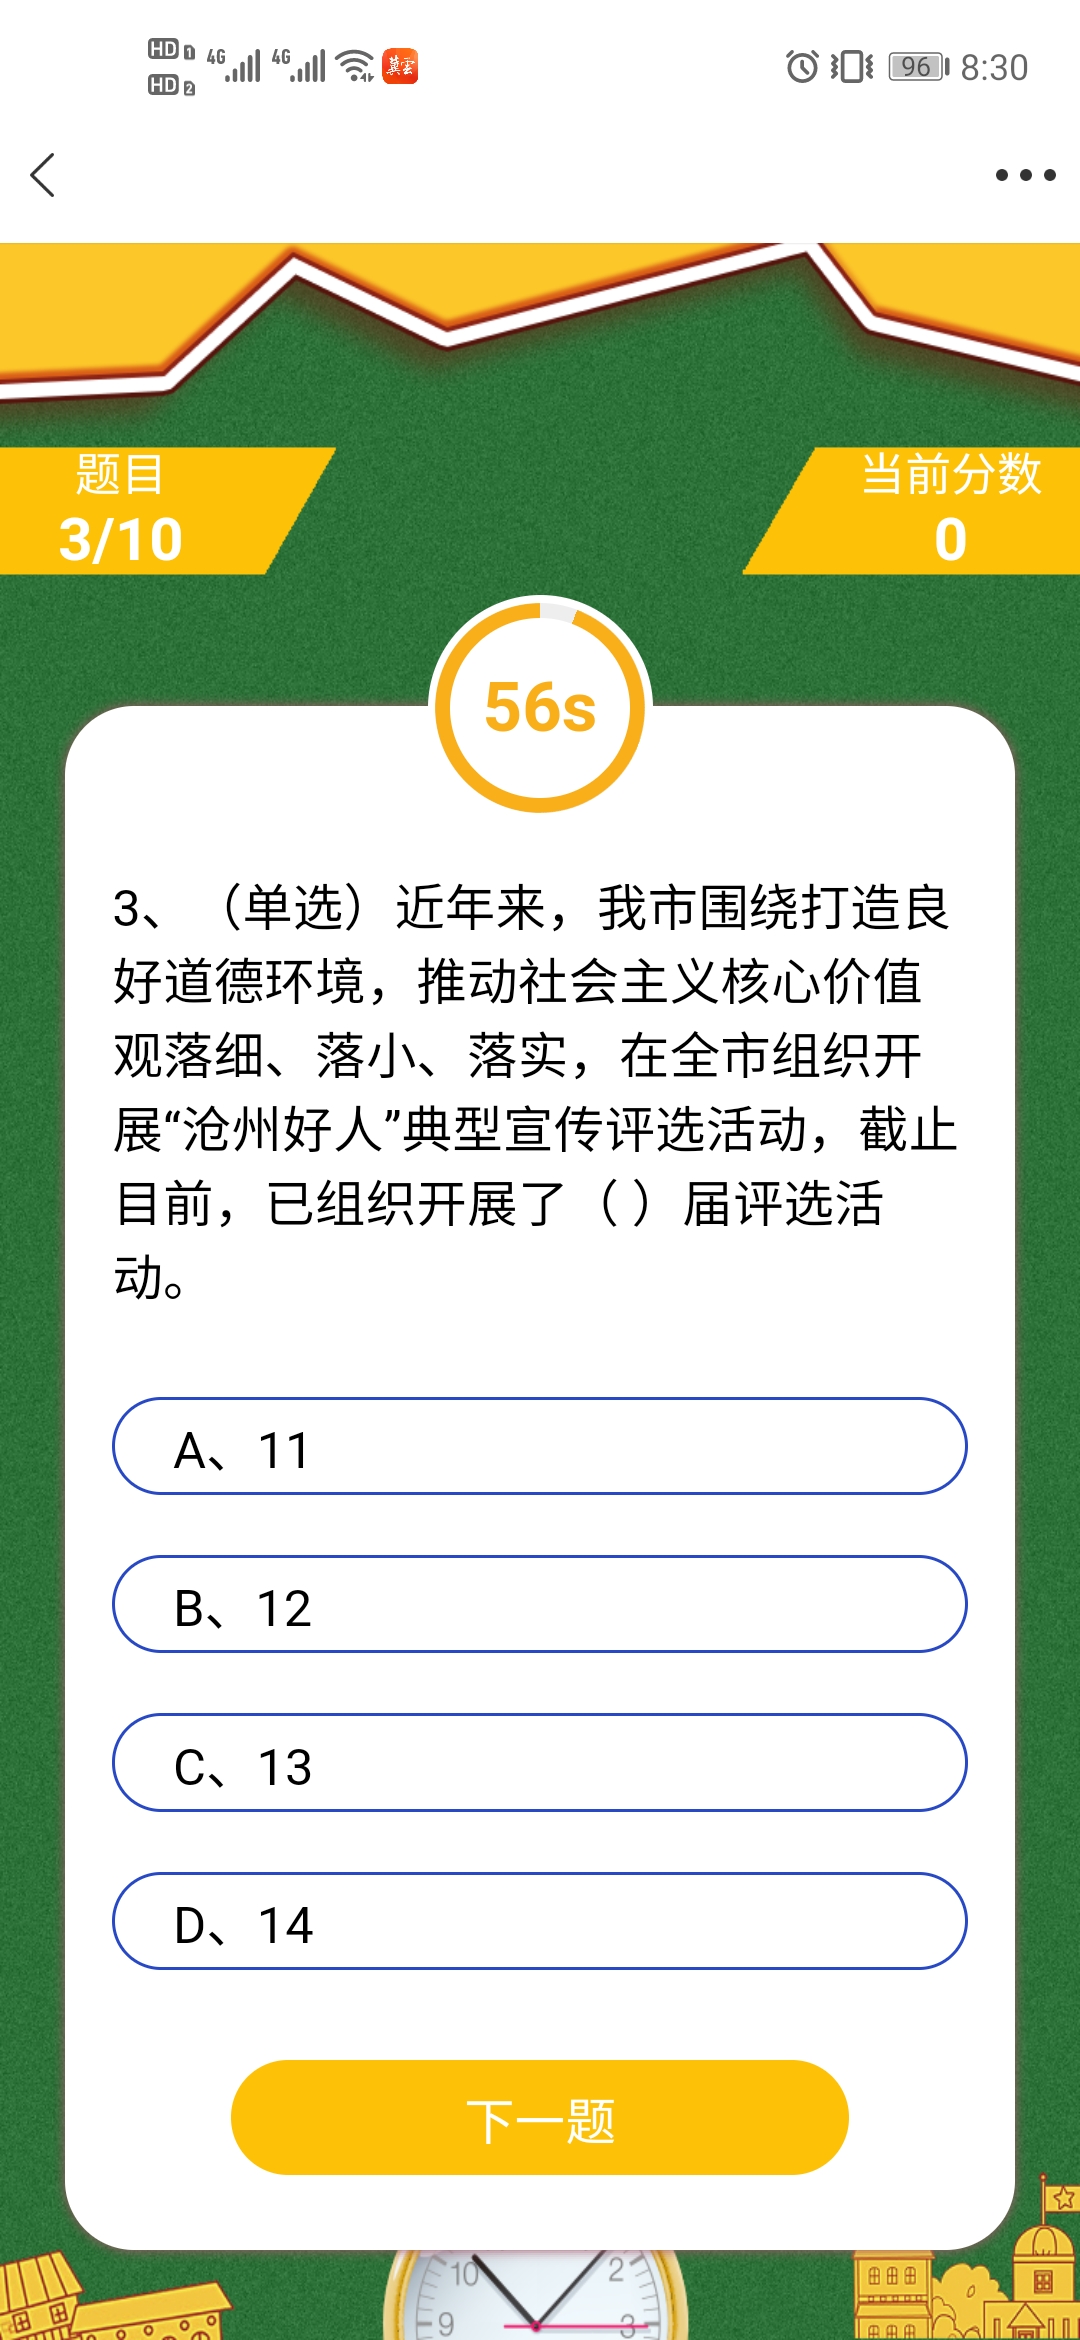 2020沧州市中小学生网络知识问答答案及题库内容分享